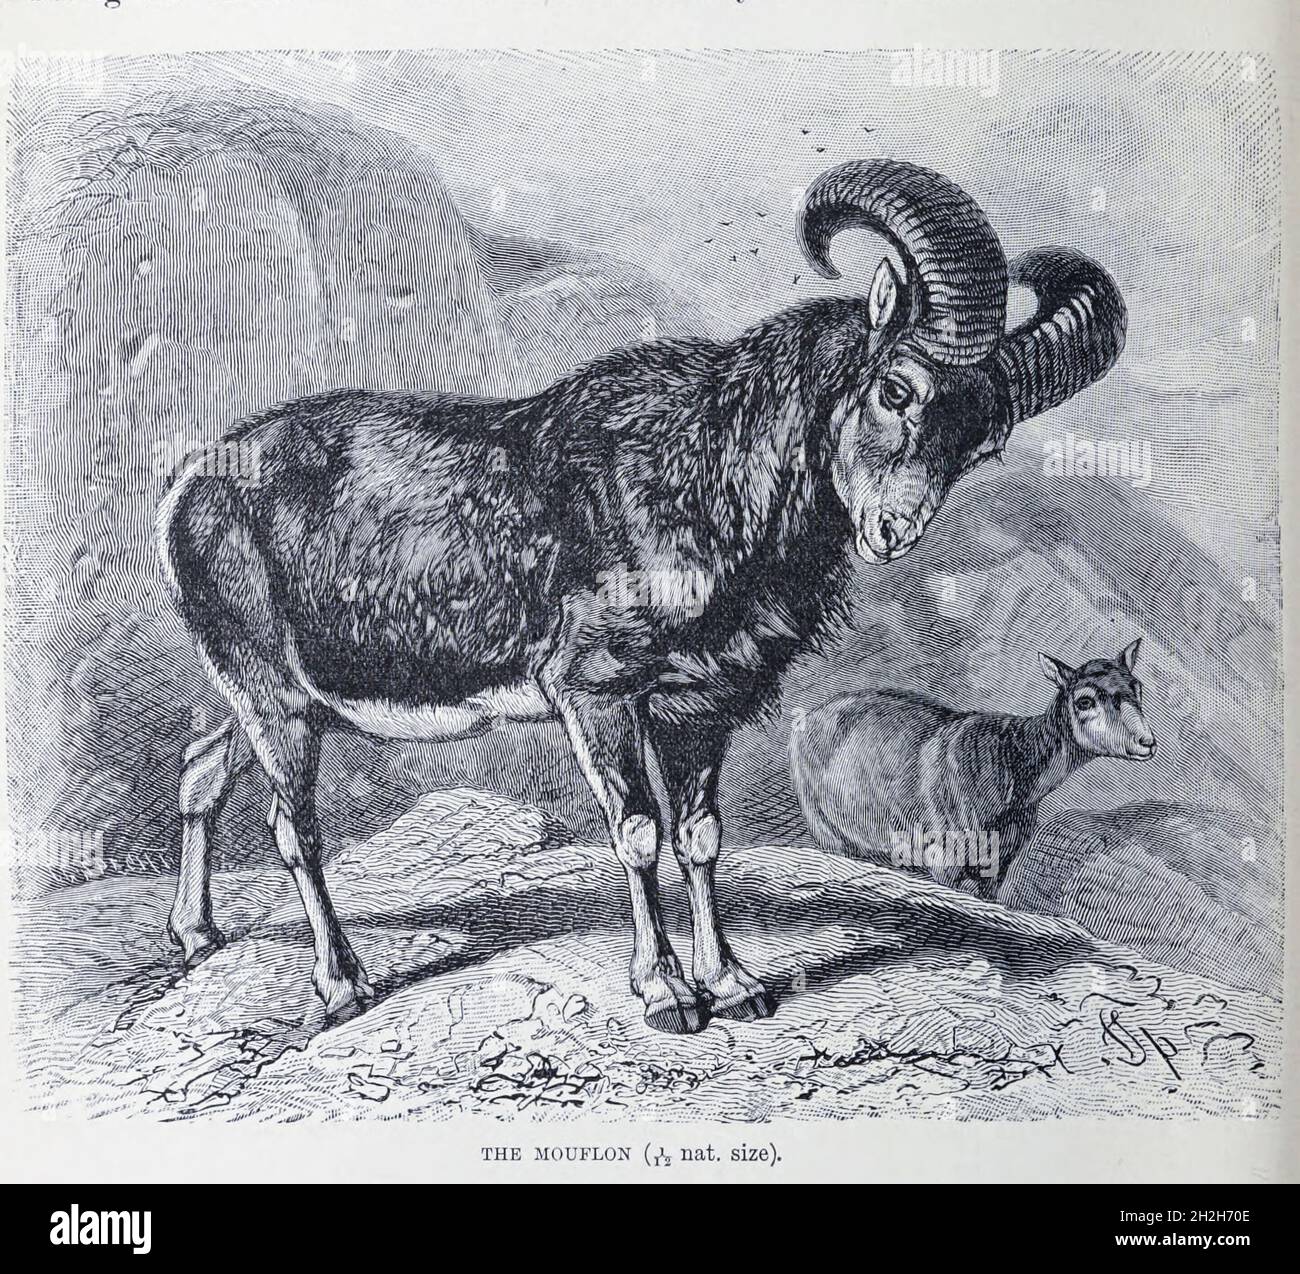 Der Mufflon (Ovis gmelini) ist ein wildes Schaf aus der kaspischen Region aus der Osttürkei, Armenien, Aserbaidschan bis Iran. Es wird angenommen, dass es der Vorfahr aller modernen Hausschafrassen aus dem Buch "Royal Natural History" Band 2 herausgegeben von Richard Lydekker, Veröffentlicht in London von Frederick Warne & Co im Jahr 1893-1894 Stockfoto